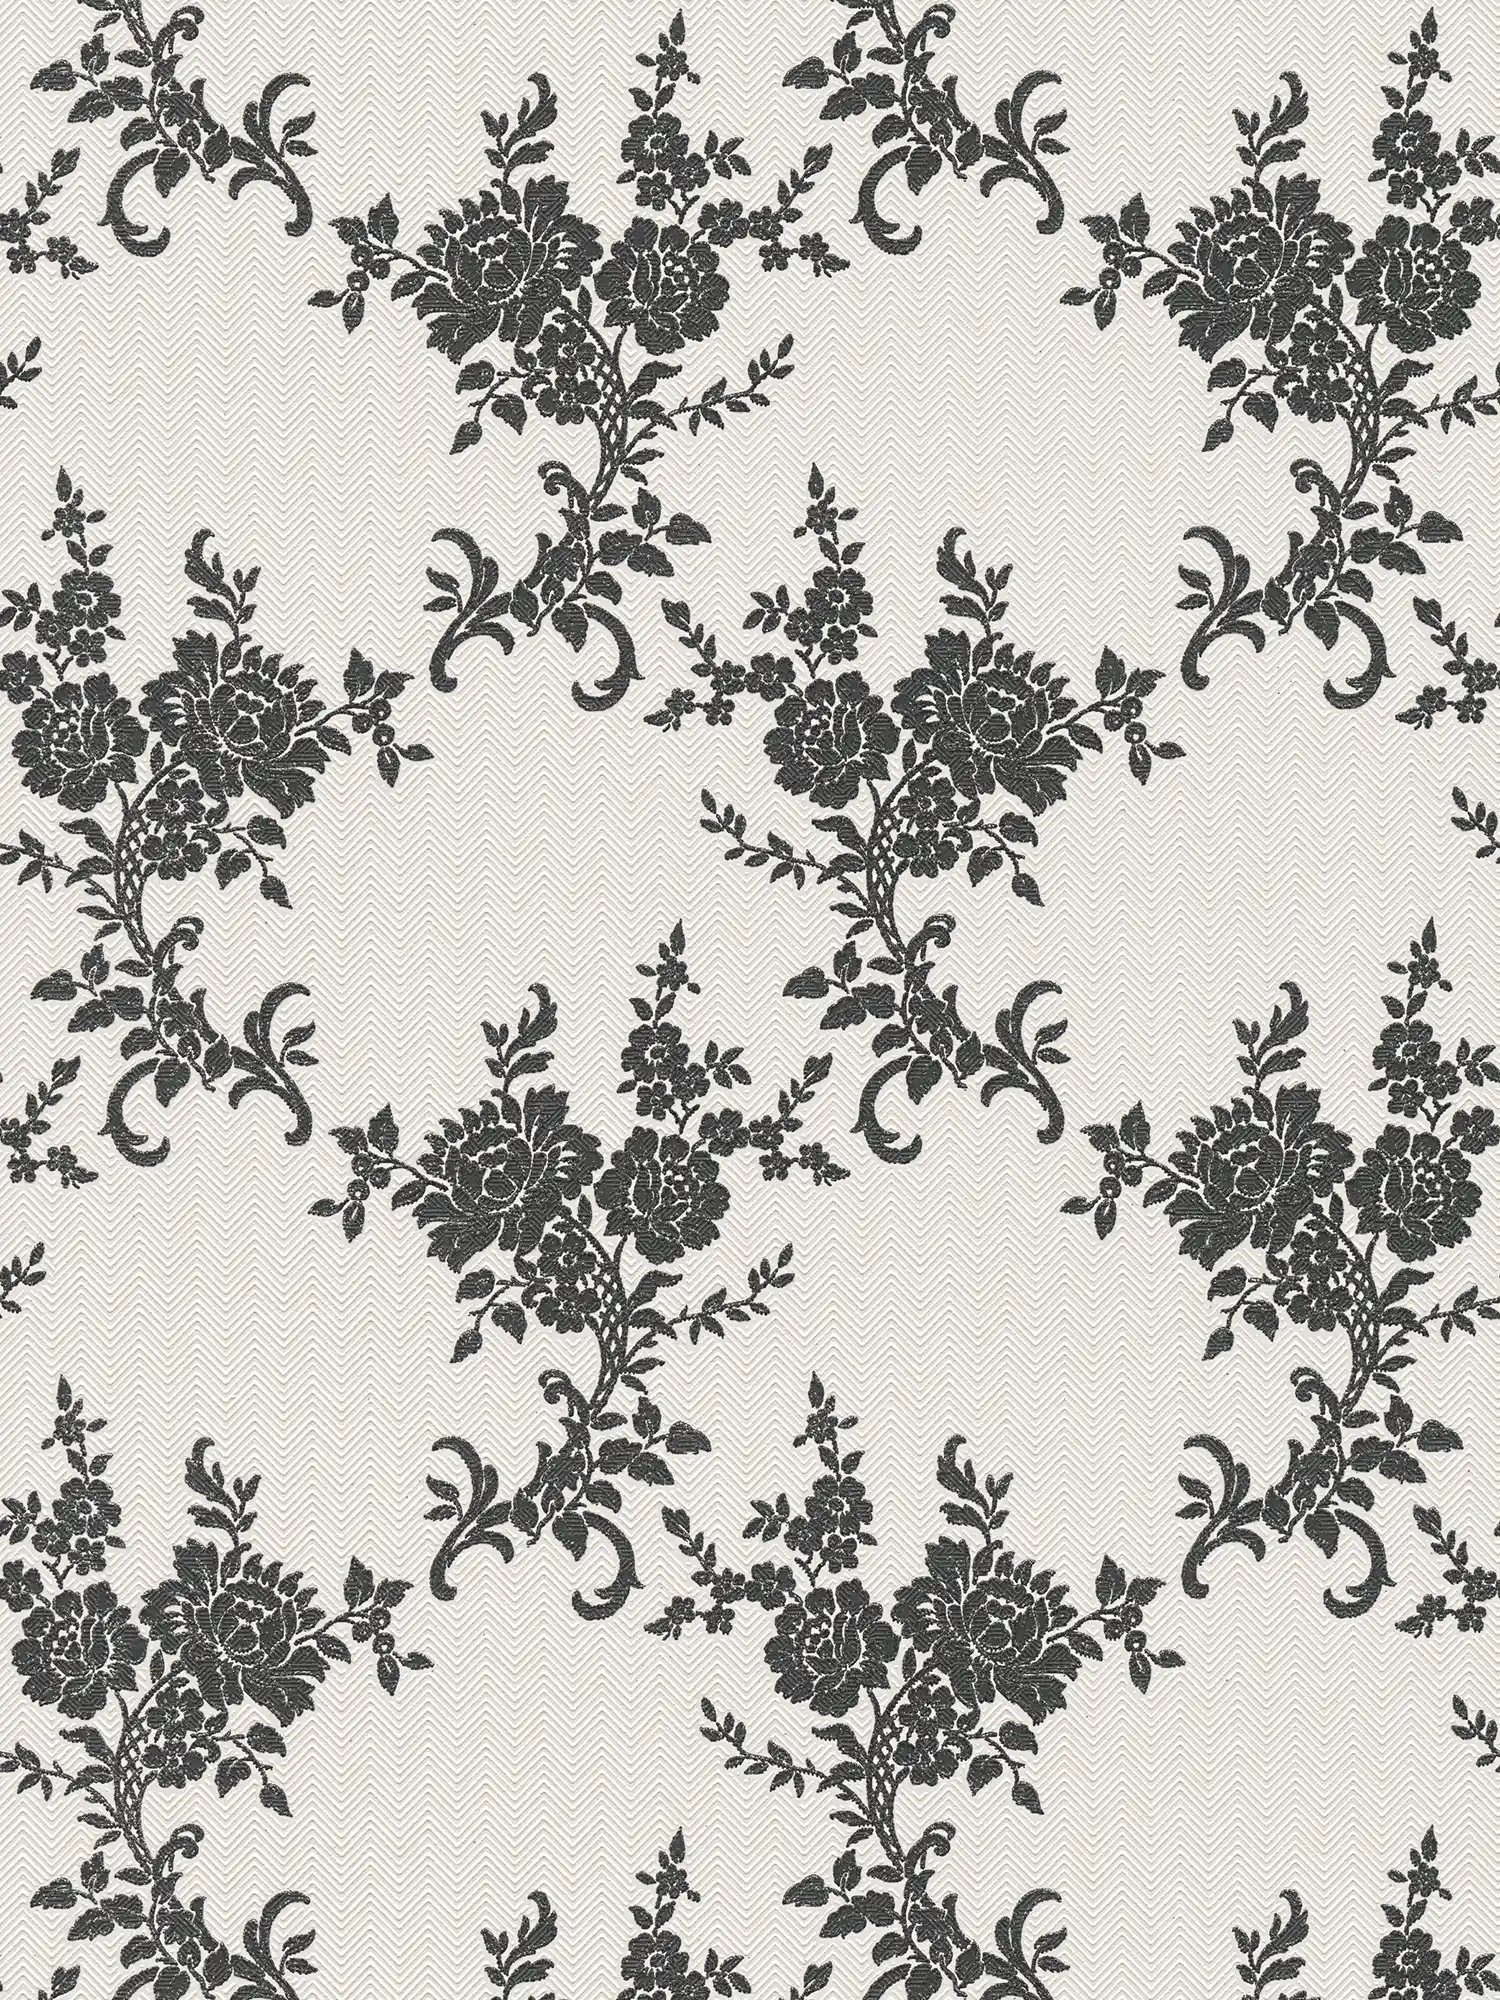 Wallpaper floral ornaments & chevron pattern - black, white, silver
